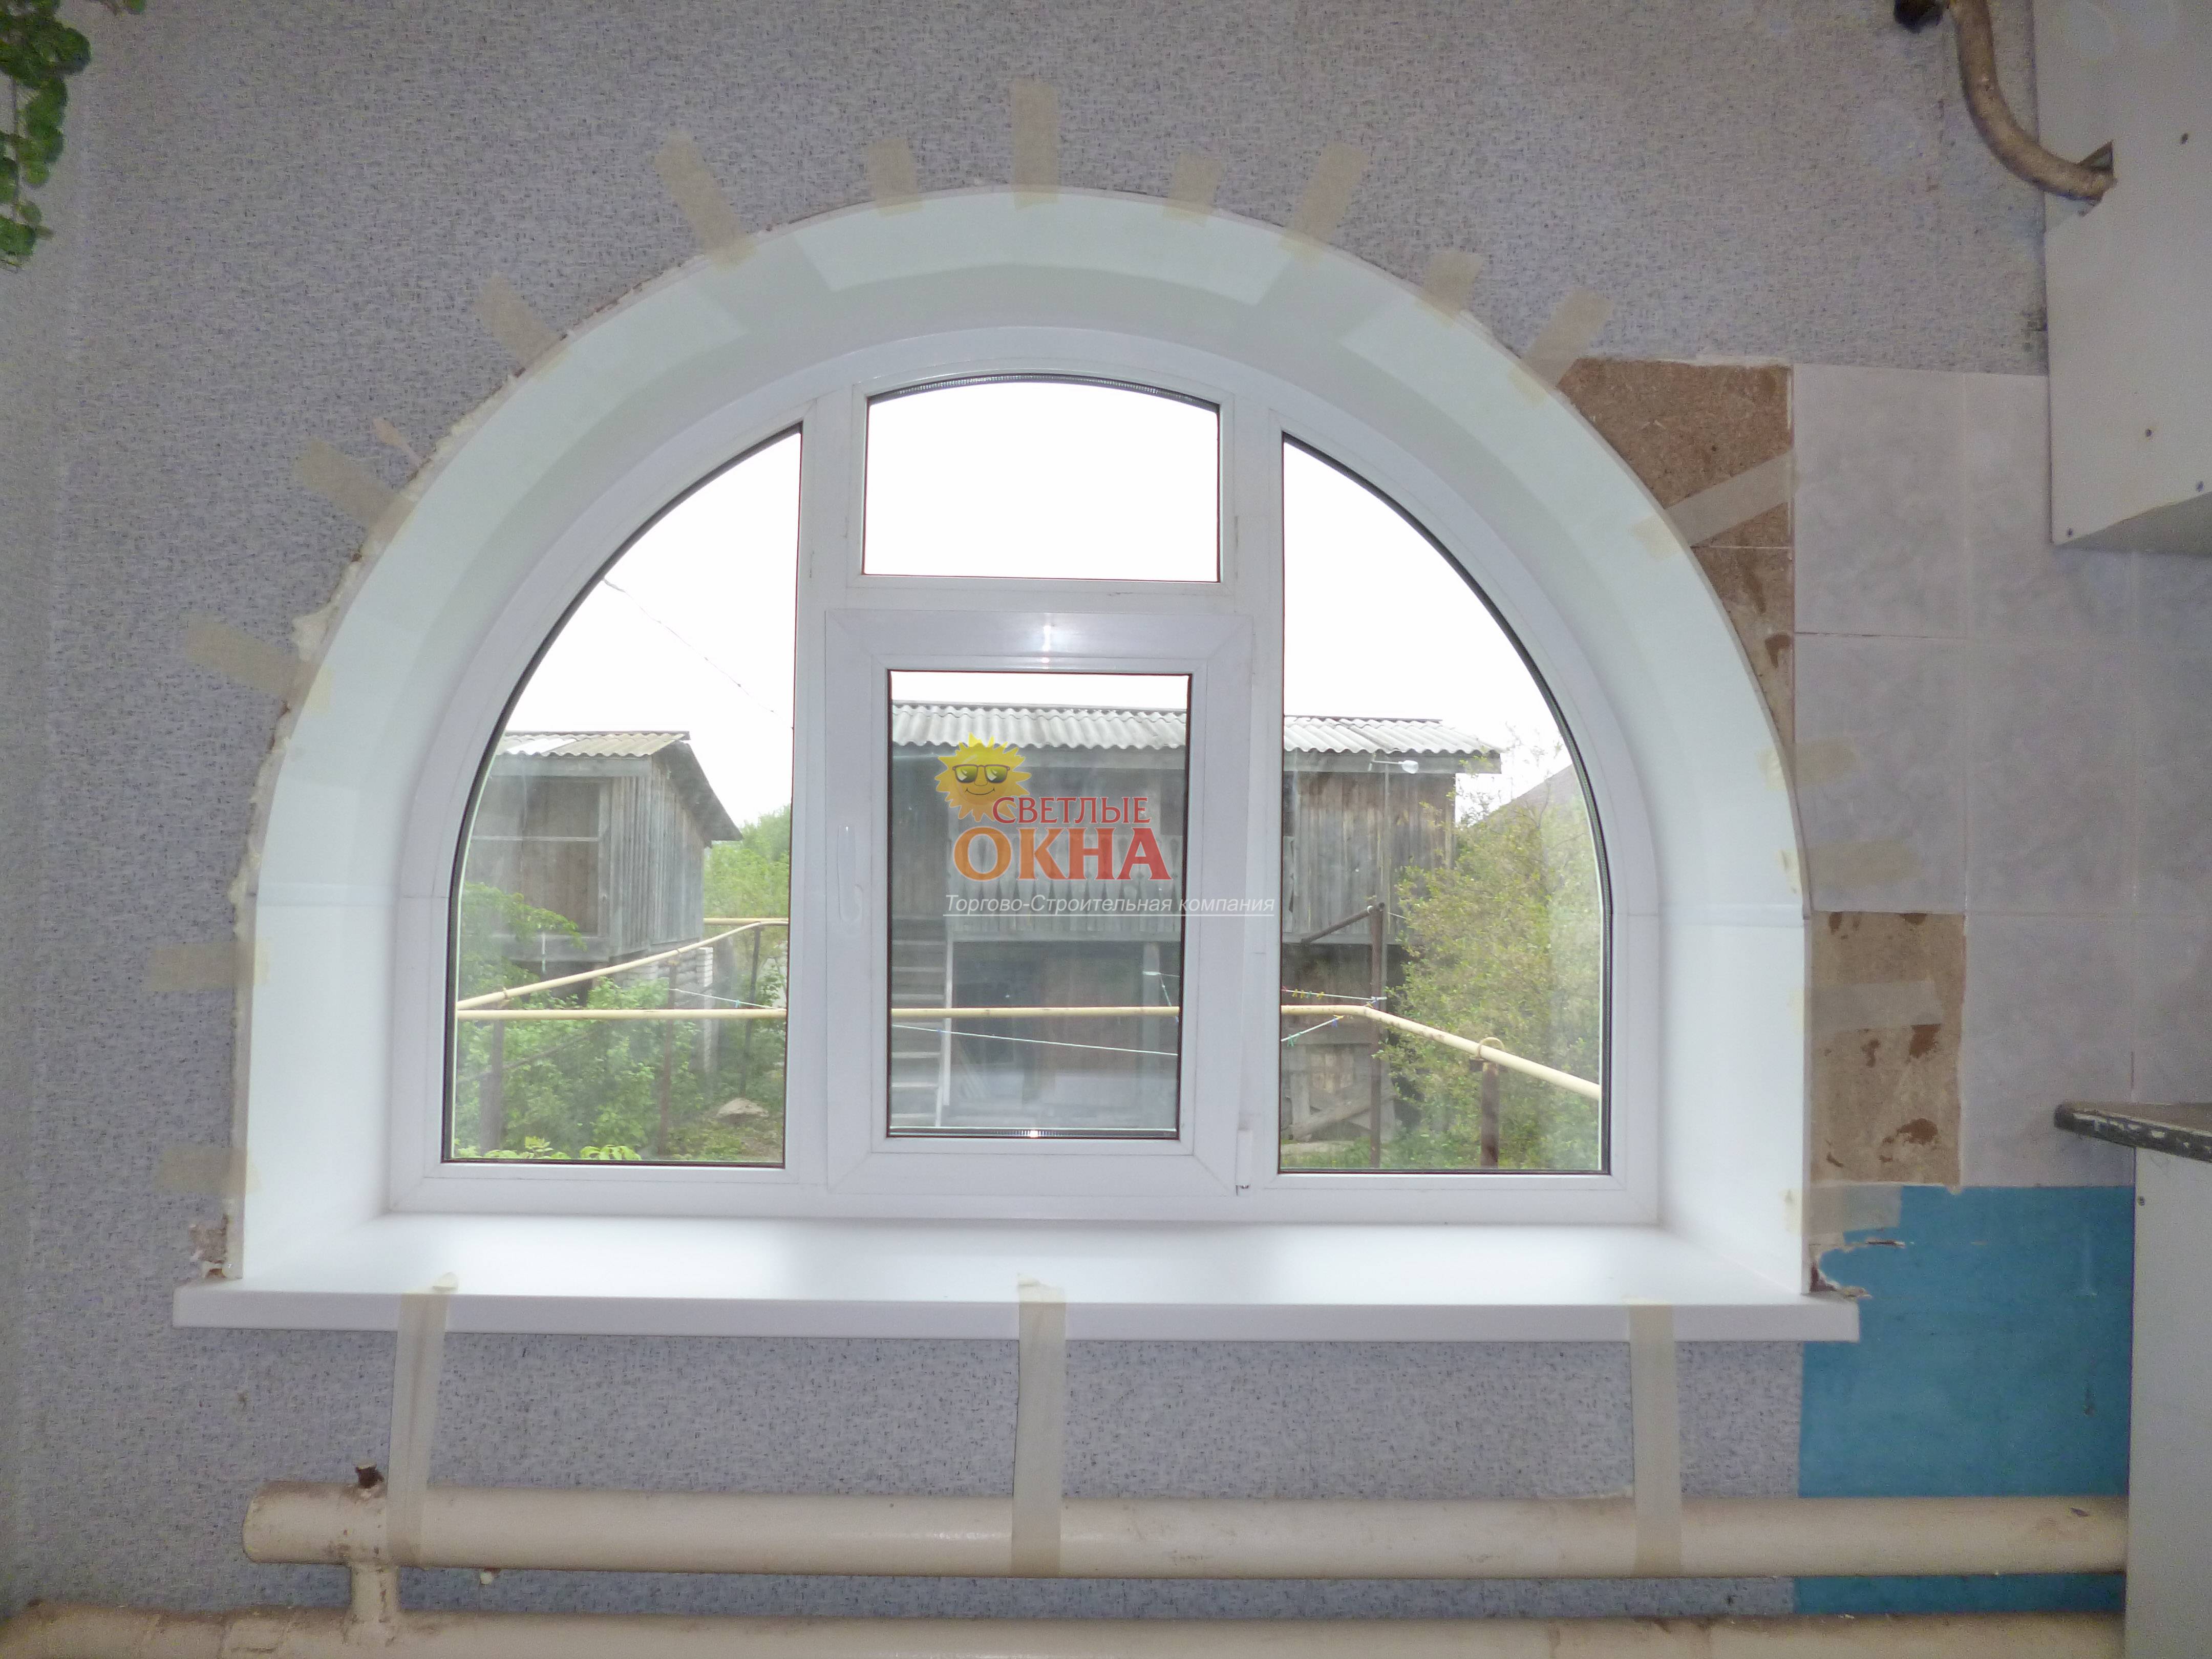 Шторы на арку в кухне — тонкости оформления арочного окна и дверного проема